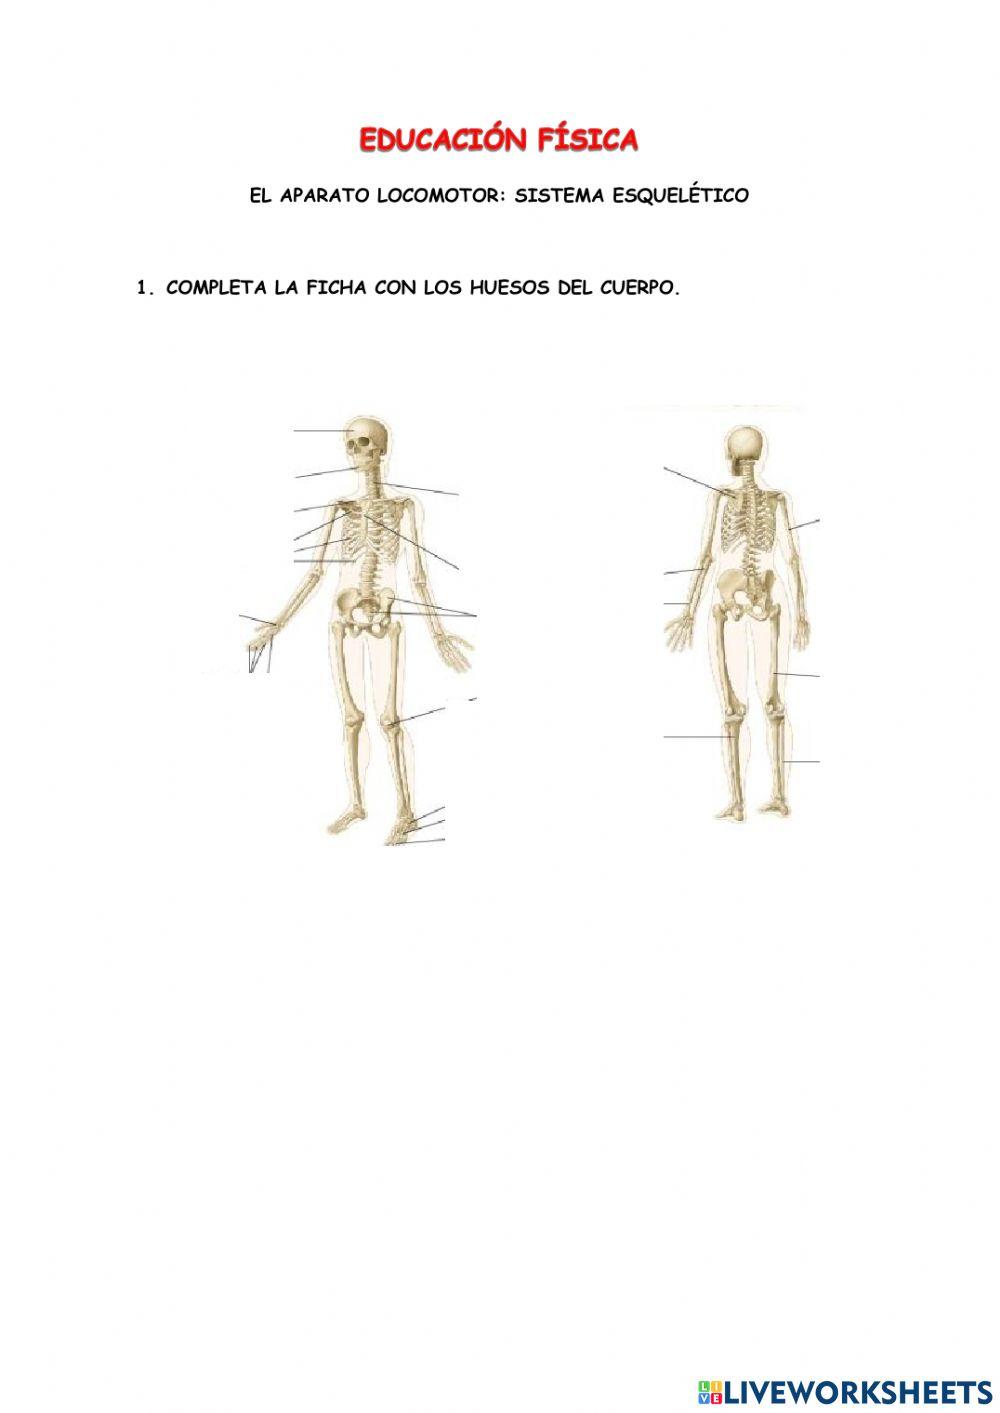 Los huesos del cuerpo